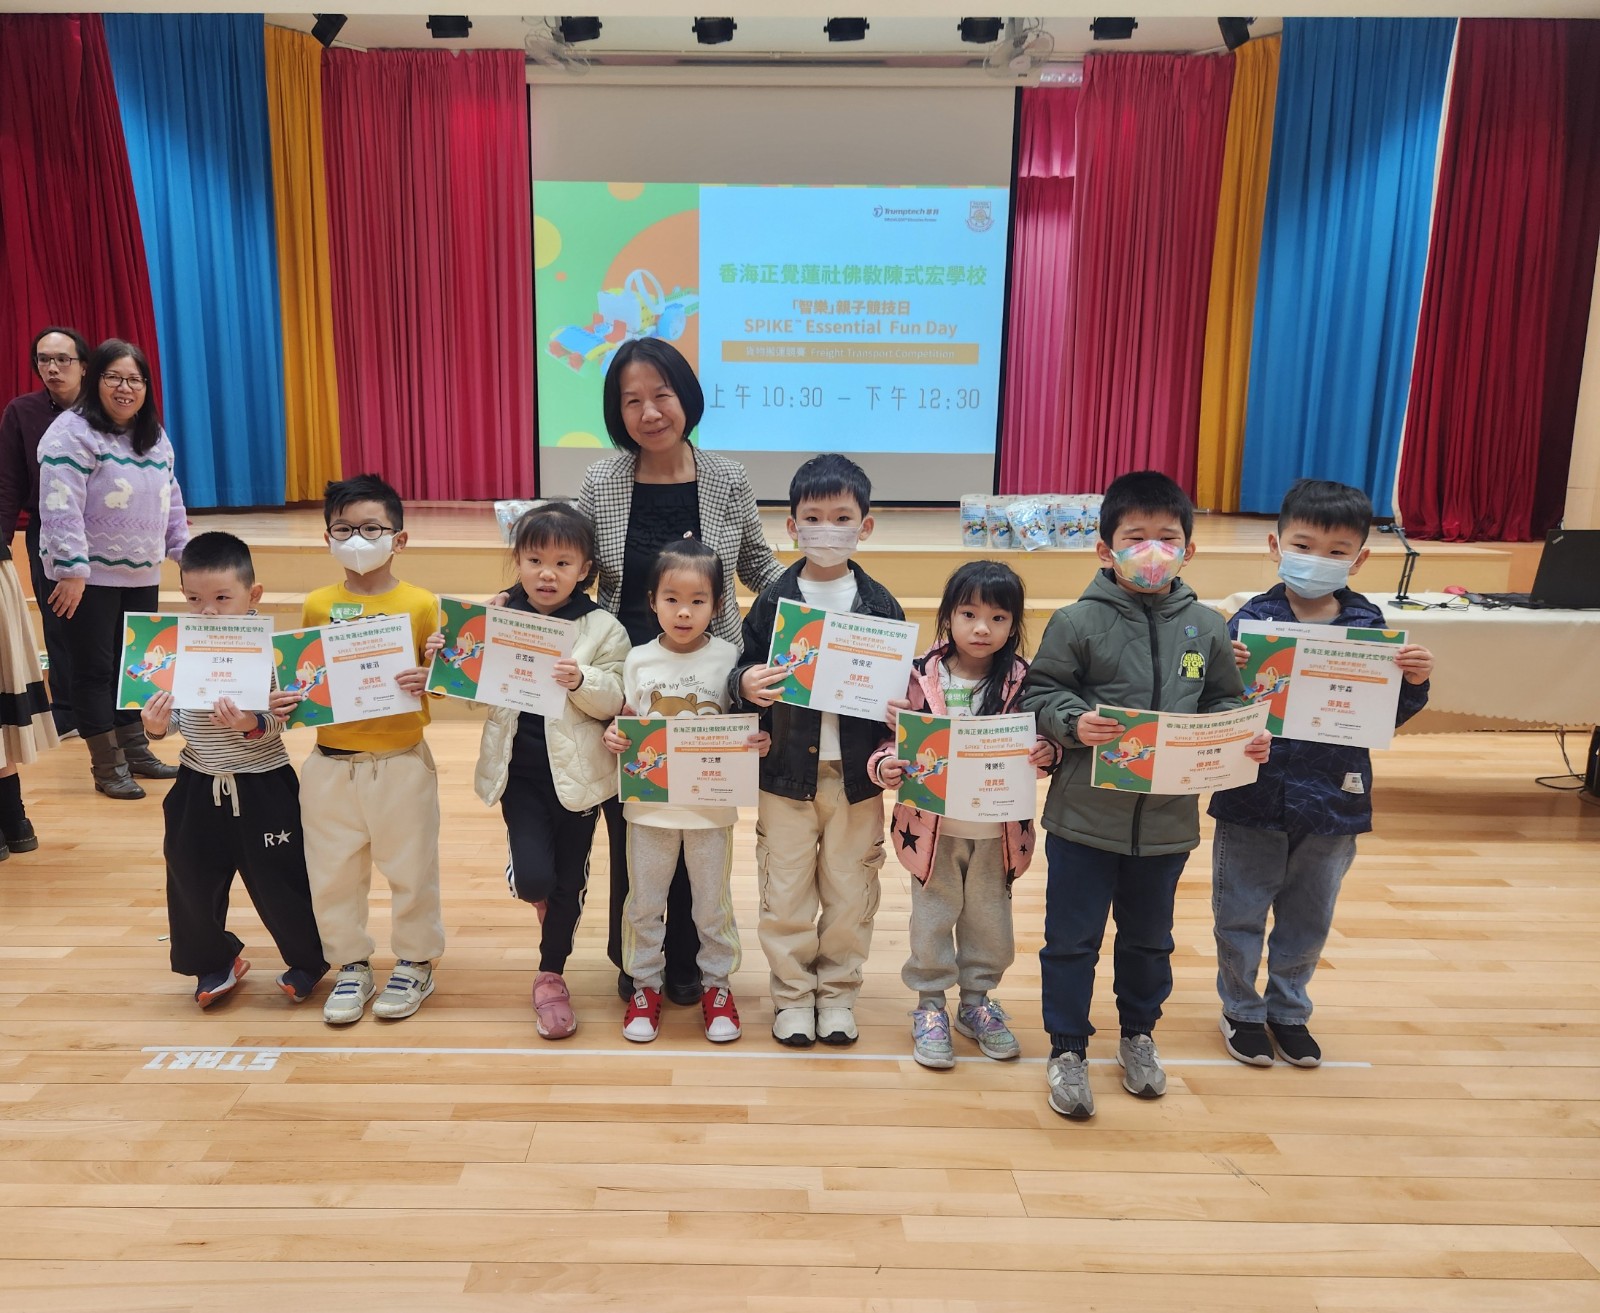 SPIKE Essential Fun Day - HHCKLA Buddhist Chan Shi Wan Primary School